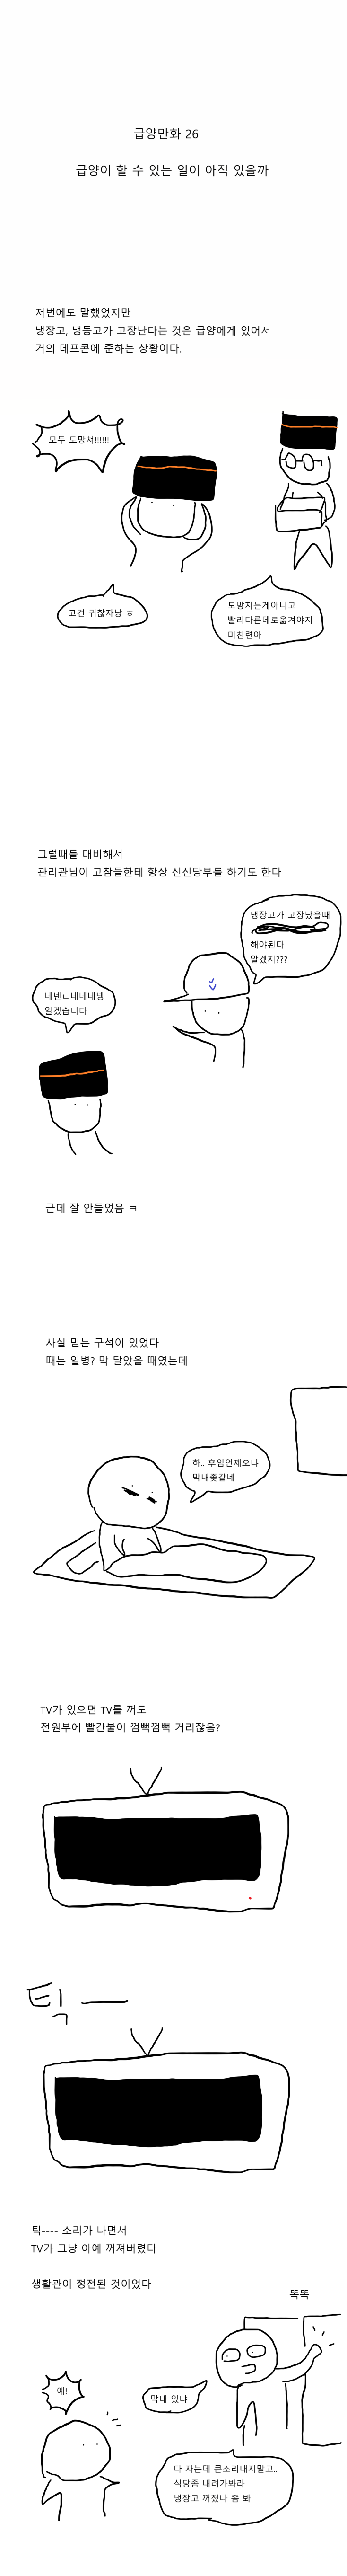 병사식당 정전된 만화